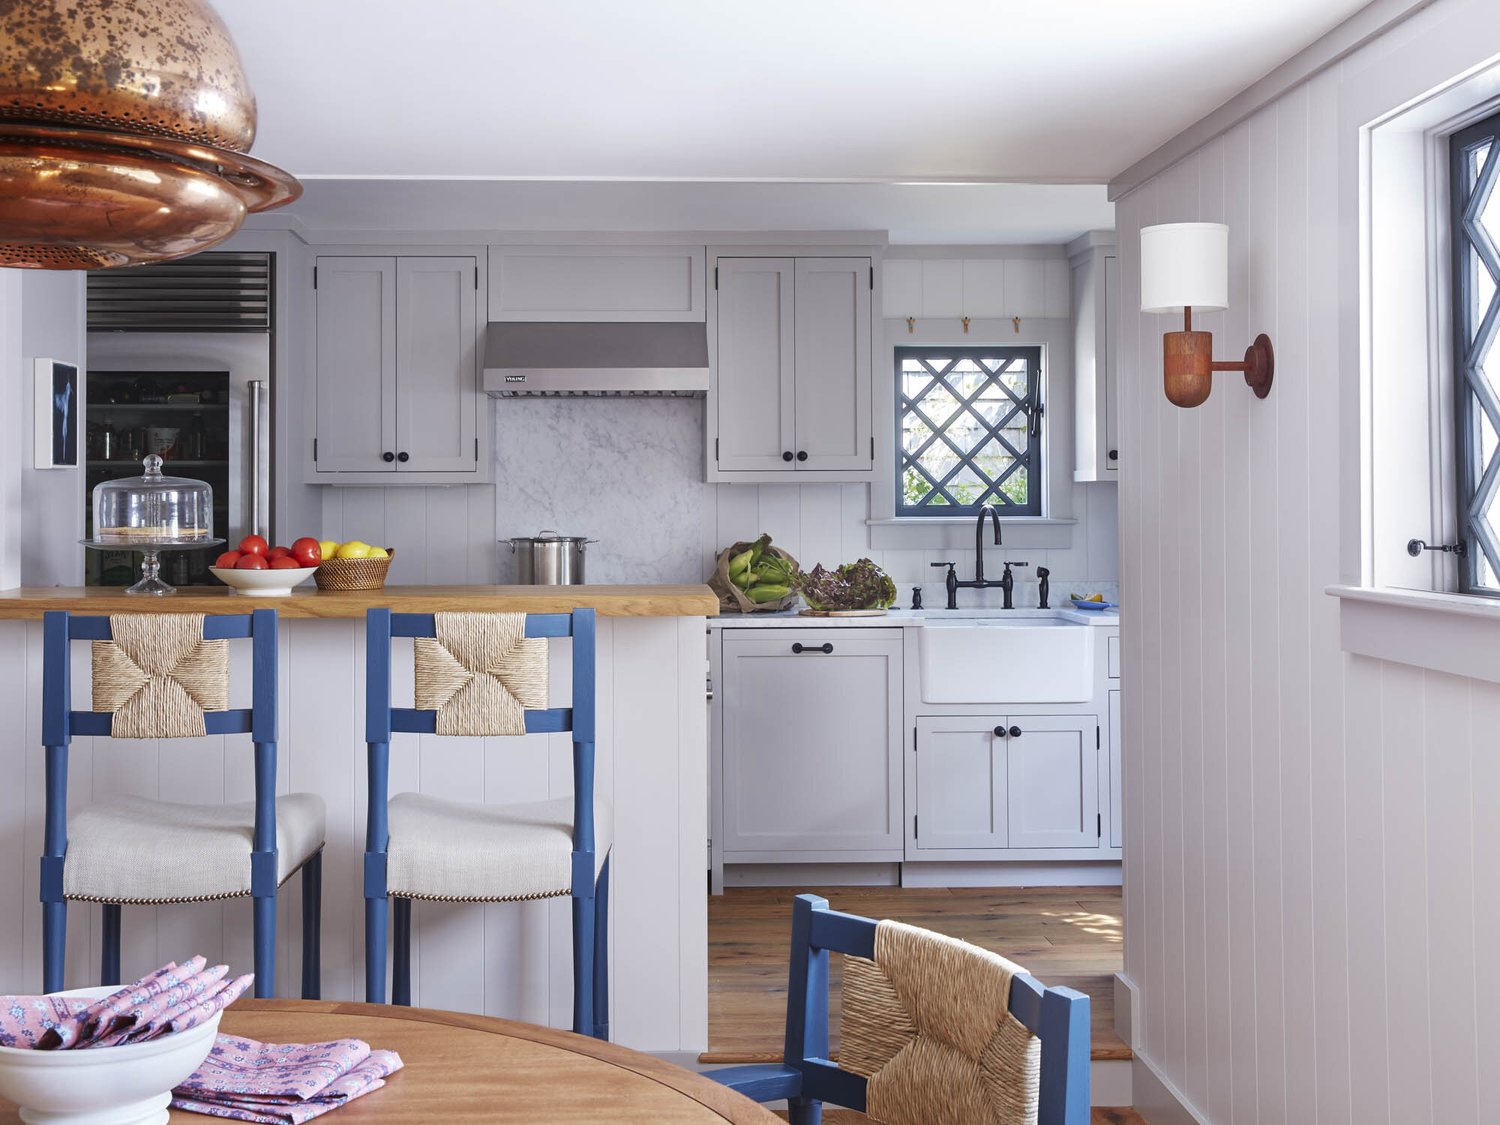 decor cottage bord de mer chic cuisine ouverte îlot bar meuble gris clair classique chaise bleu et rotin